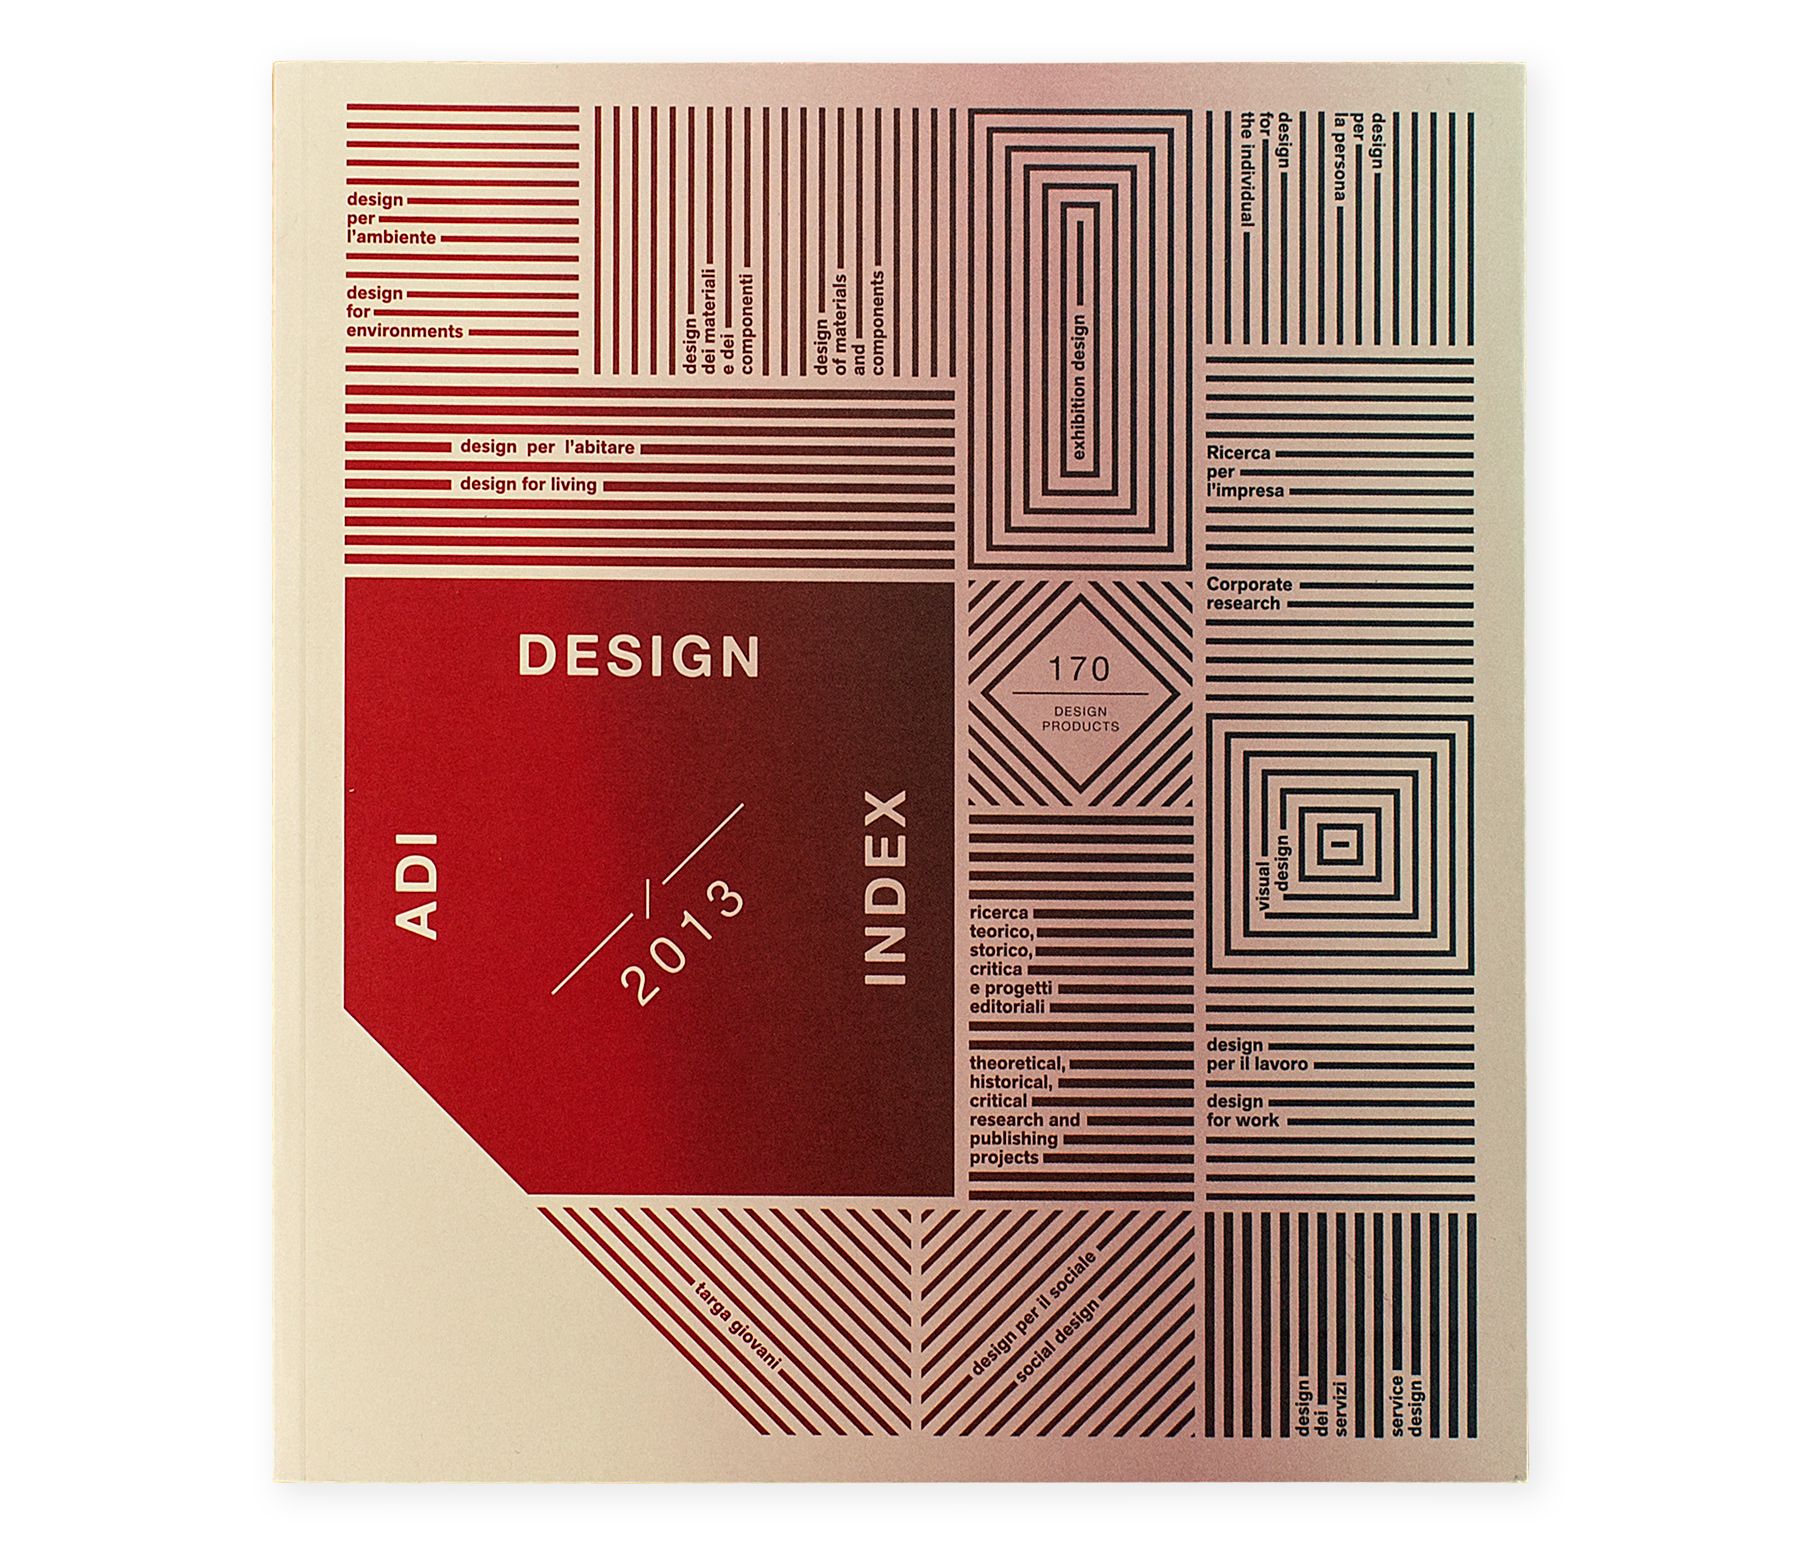 ADI Design Index 2013 cover